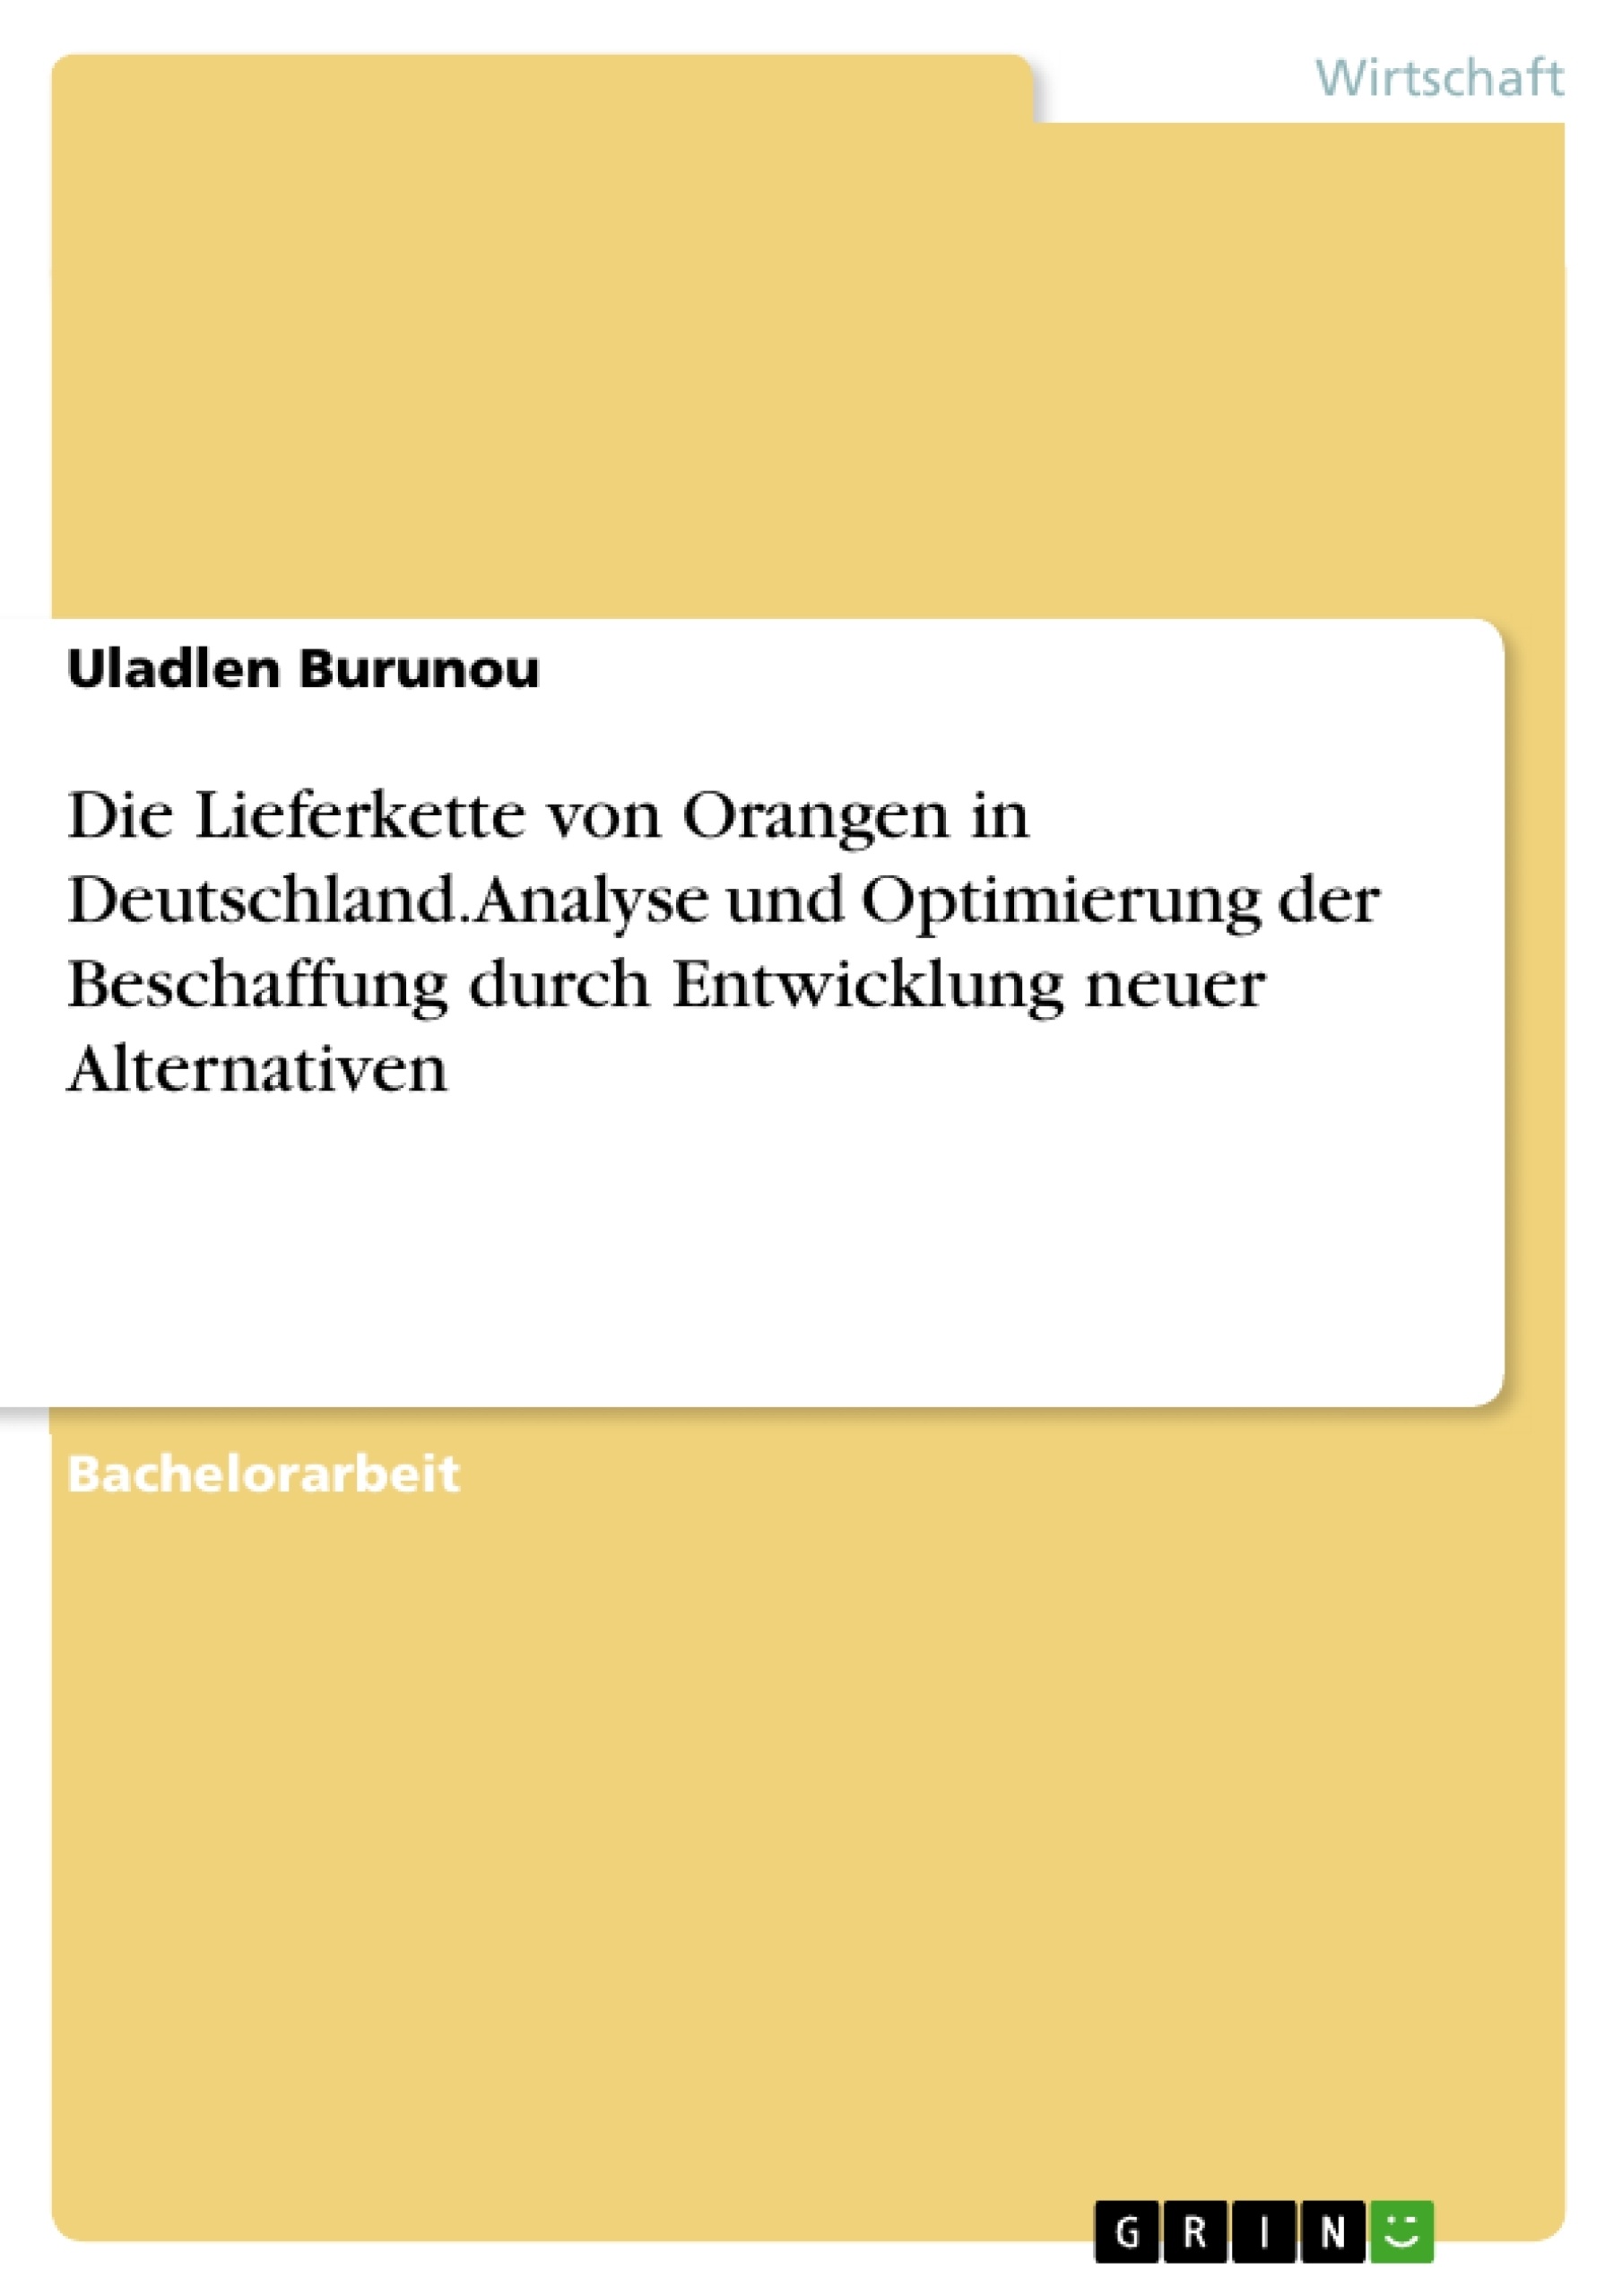 Titel: Die Lieferkette von Orangen in Deutschland. Analyse und Optimierung der Beschaffung durch Entwicklung neuer Alternativen